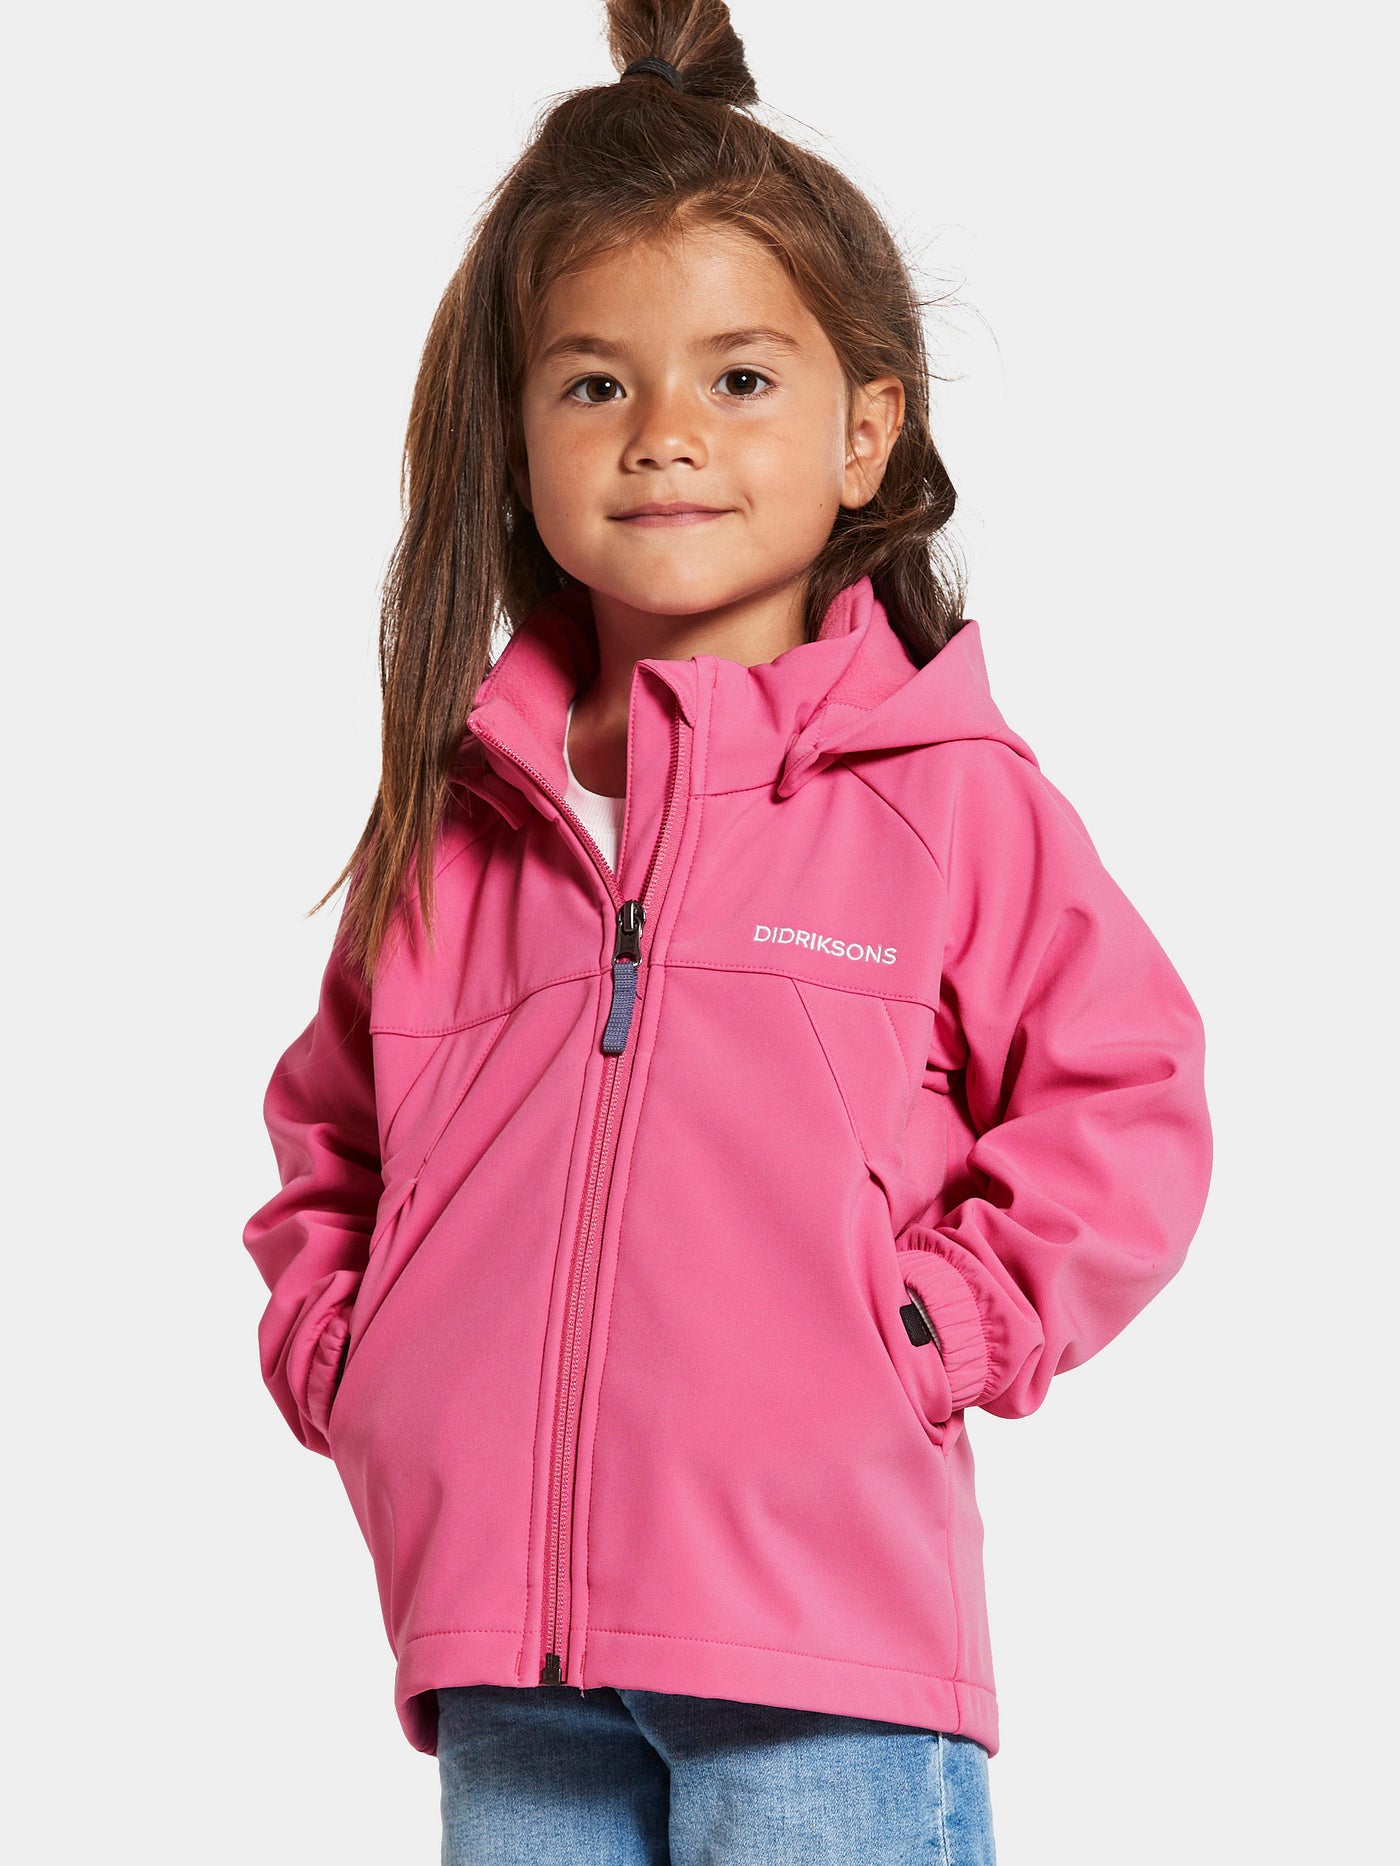 Tytön päällä Didriksonsin Dellen lasten pinkki softshell-takki läheltä kuvattuna